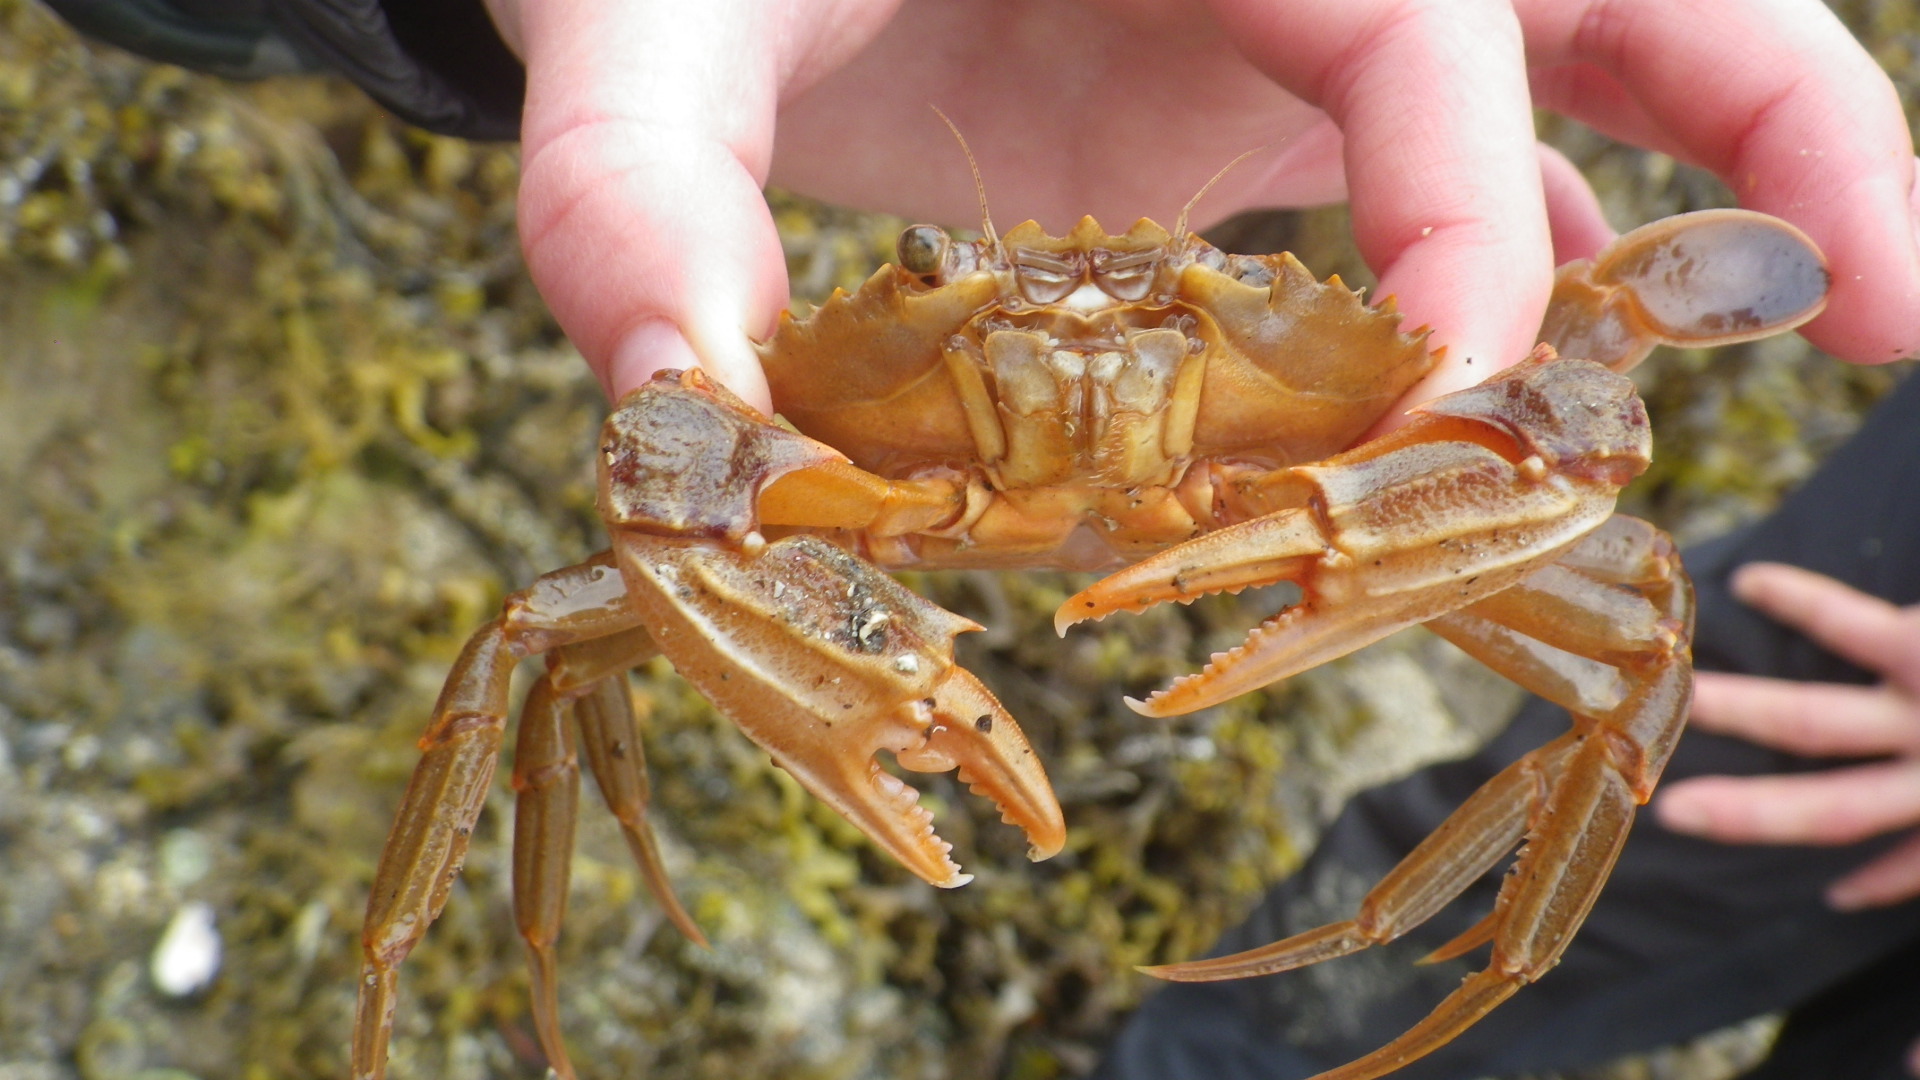 A Common Shore Crab at Glenuig Bay